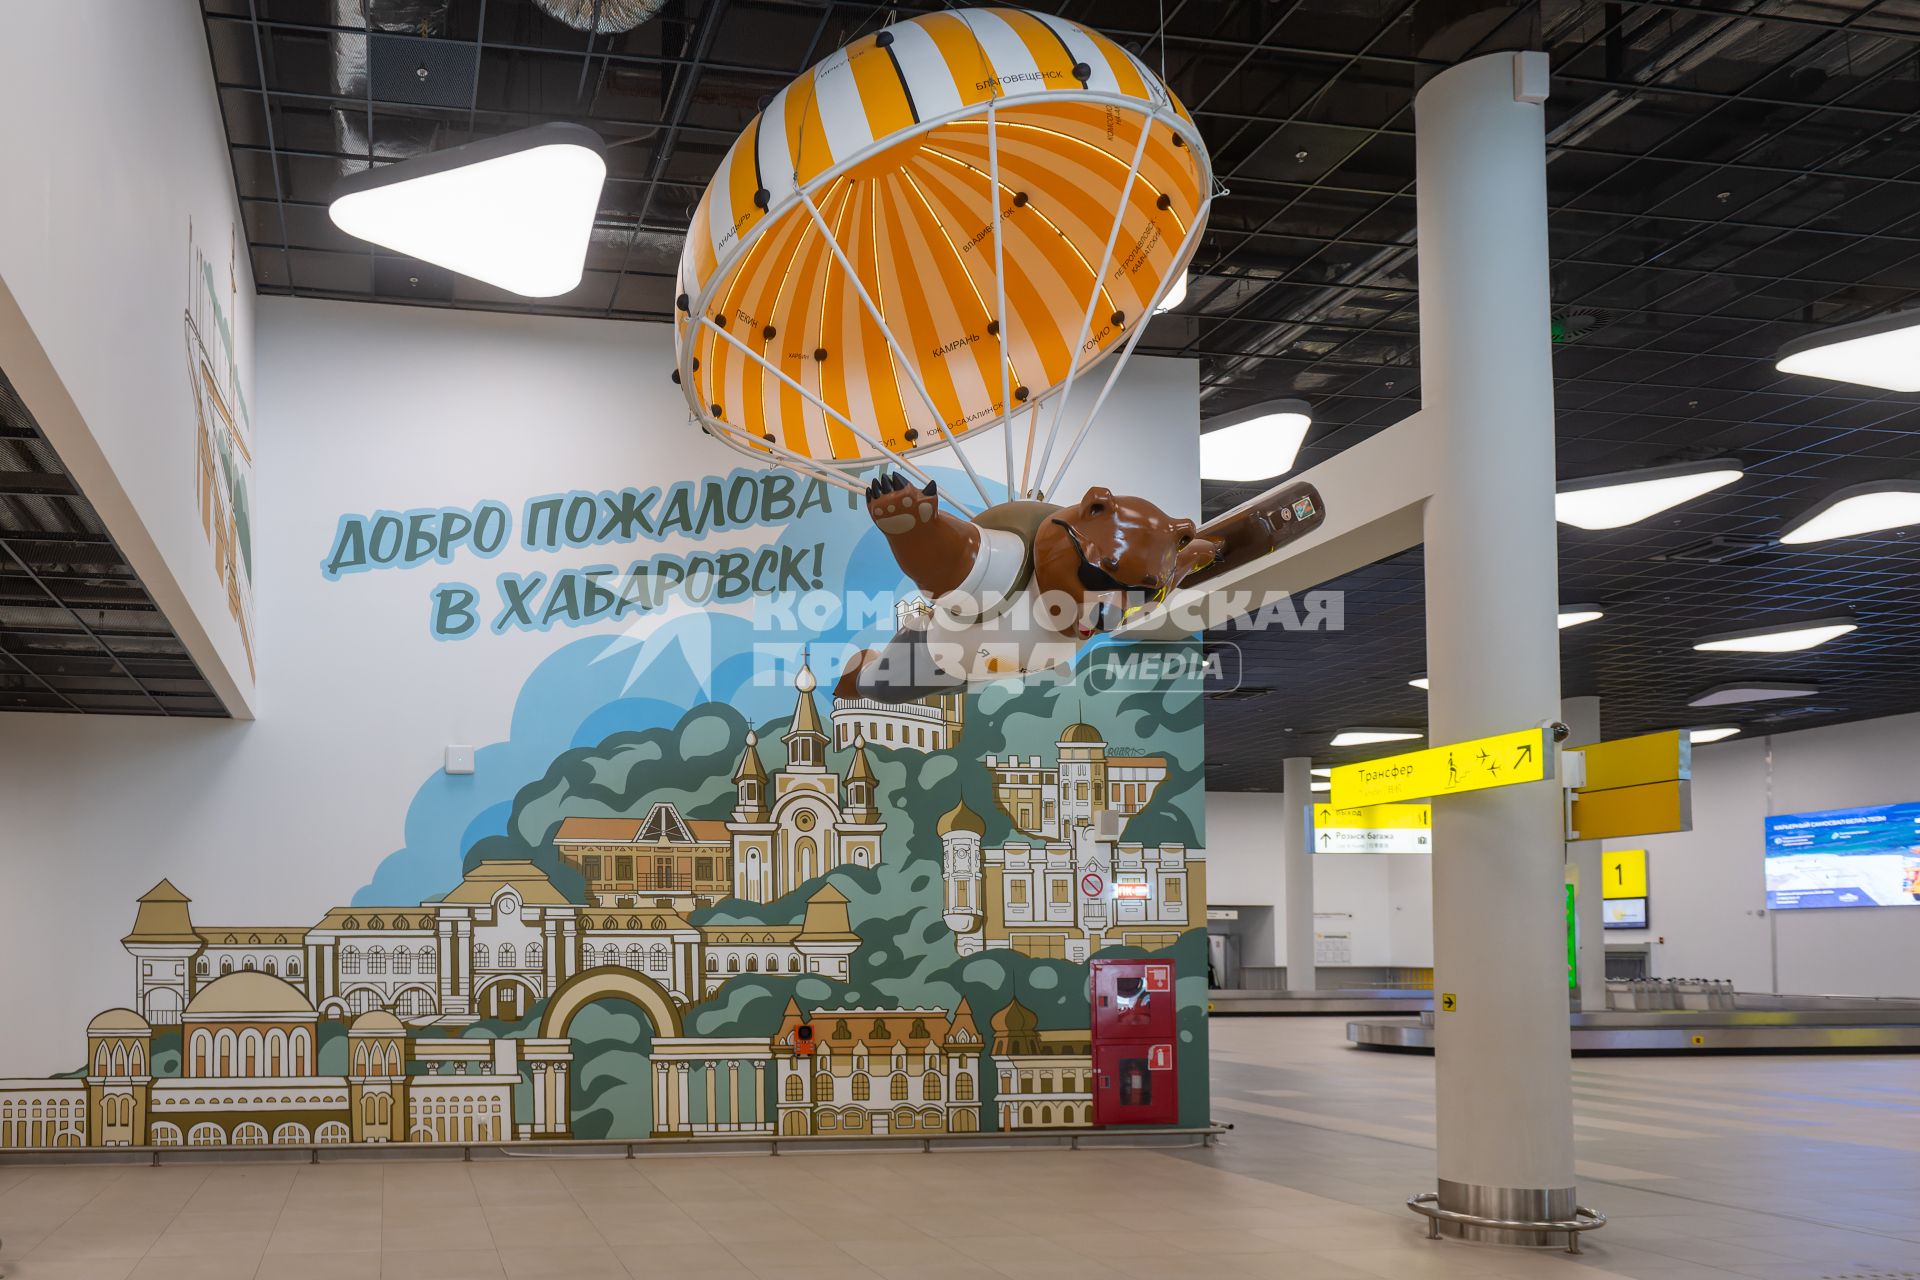 Хабаровск. Новый терминал внутренних авиалиний хабаровского международного аэропорта.